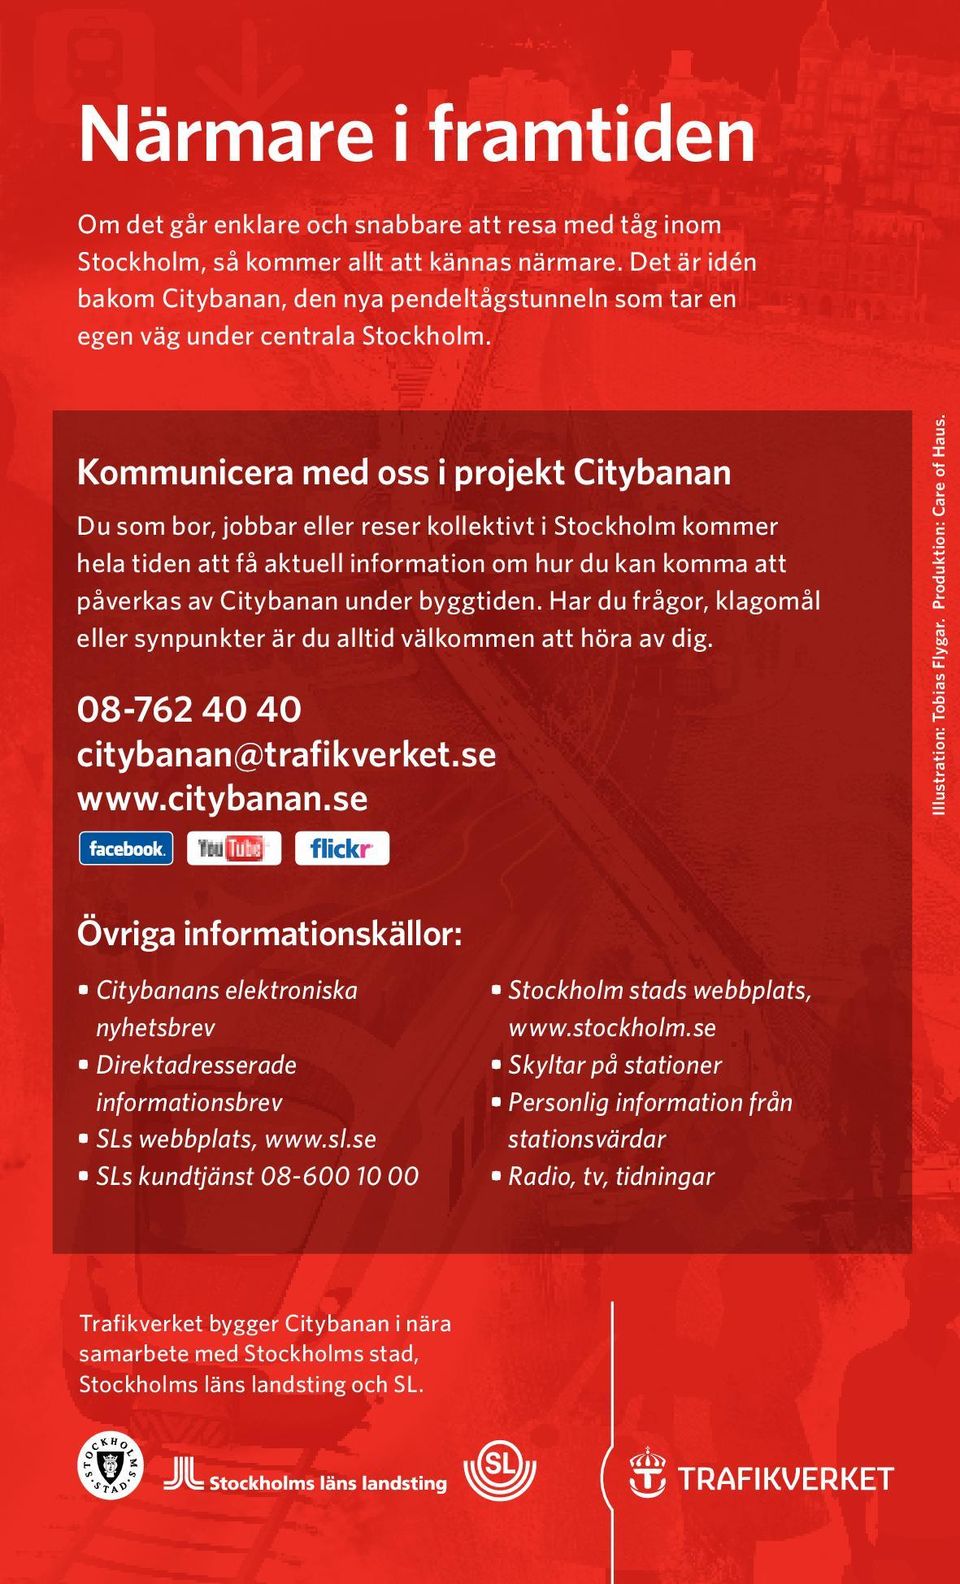 Kommunicera med oss i projekt Citybanan Du som bor, jobbar eller reser kollektivt i Stockholm kommer hela tiden att få aktuell information om hur du kan komma att påverkas av Citybanan under